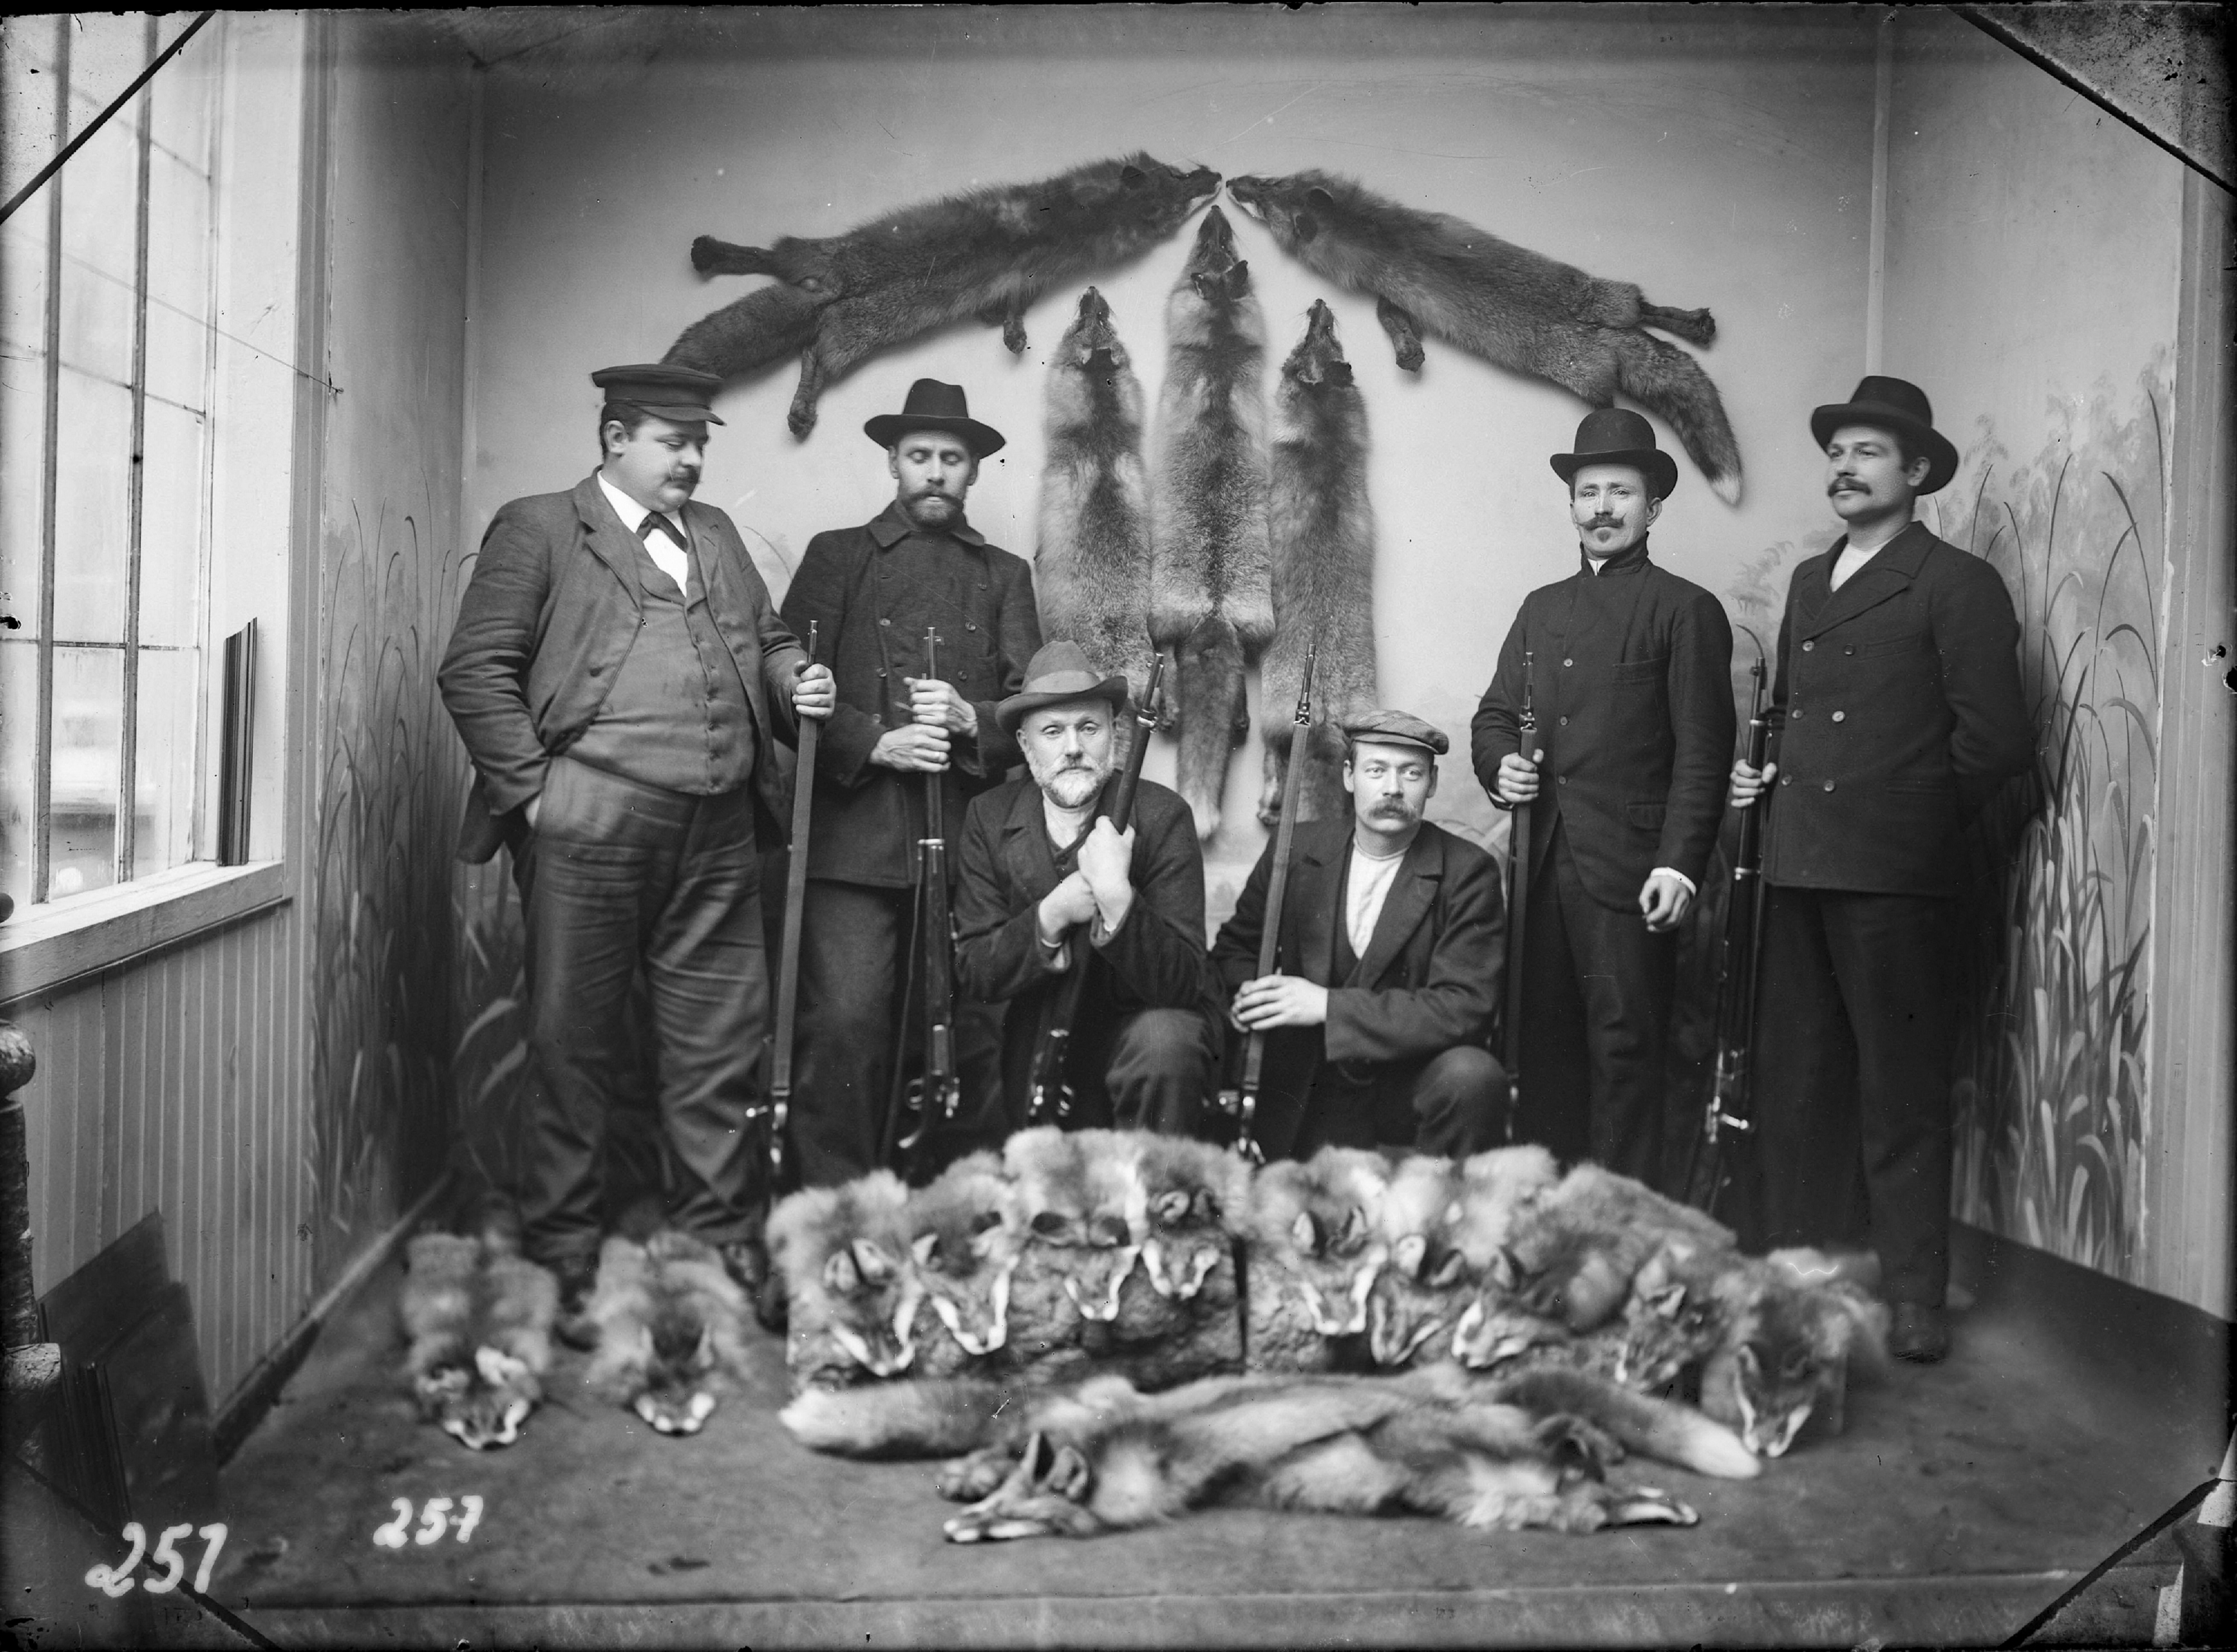 Seks jegarar pynta til fotografering i atelier. Ei stor mengd revepelsar i framgrunnen. Fem skinn heng på veggen bak. Nordfjordeid, 1895-1930.